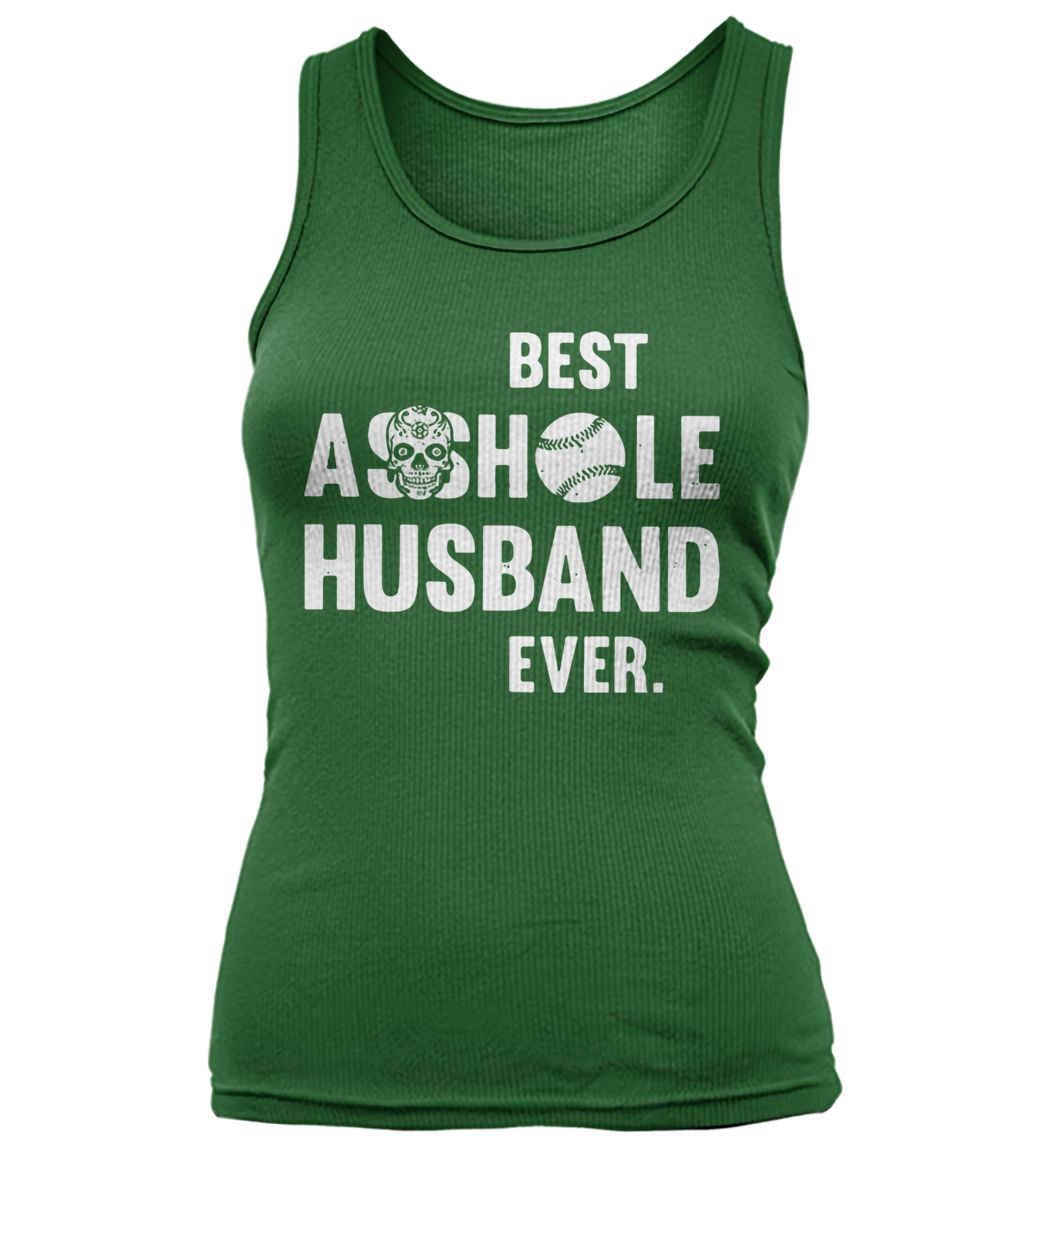 Softball best asshole husband ever women's tank top